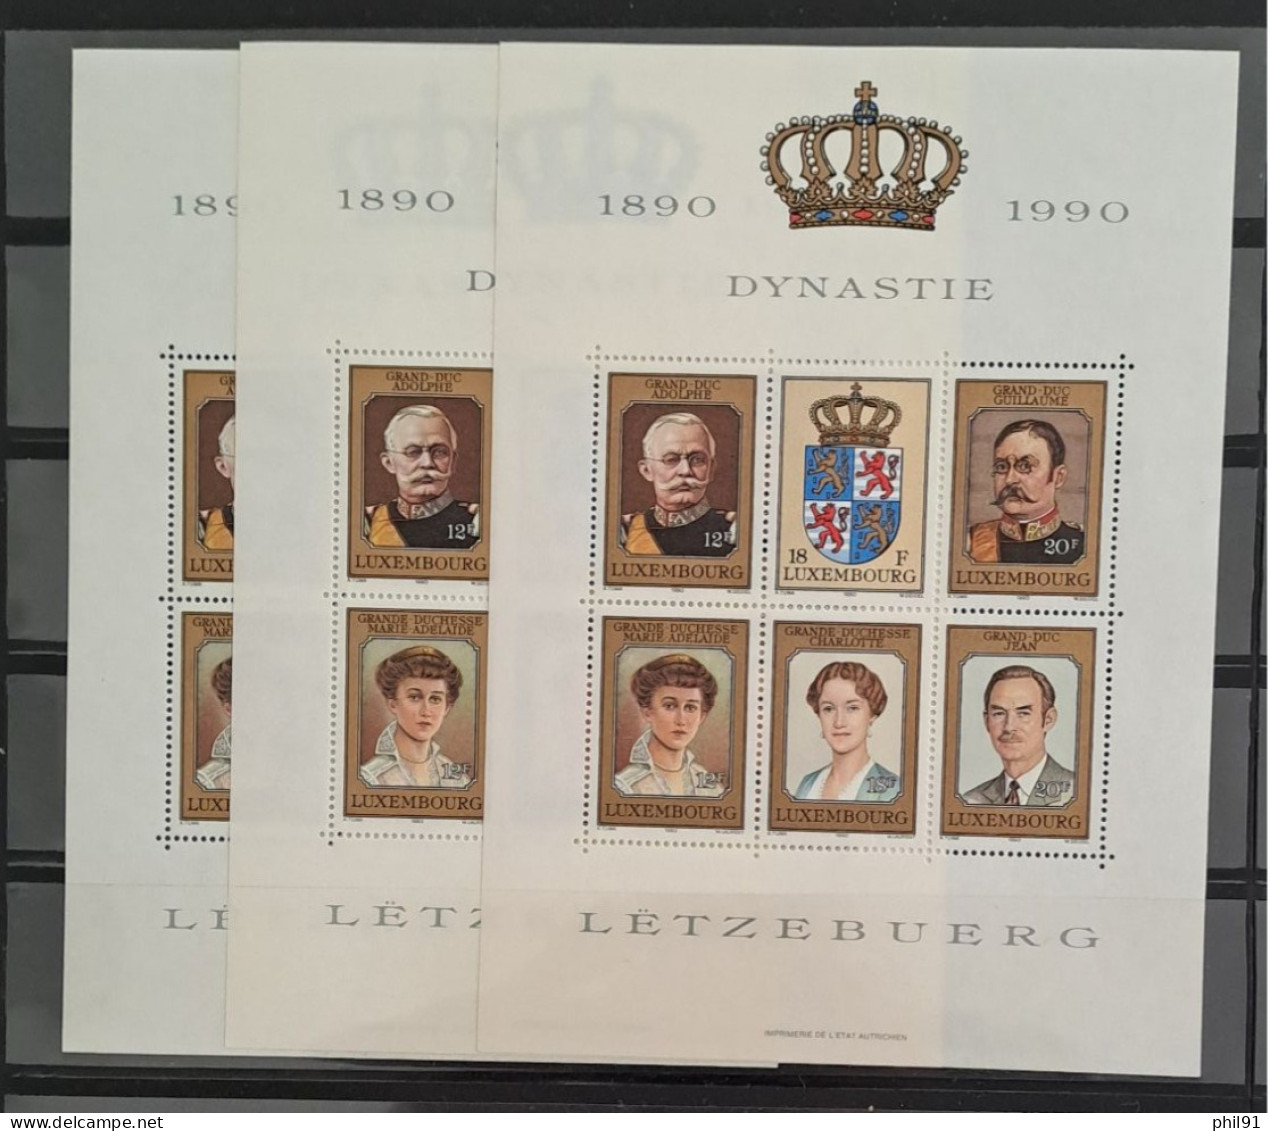 LUXEMBOURG    Petite collection de timbres neufs et ace oblitarations 1er jour  entre les années 1959 et 1995